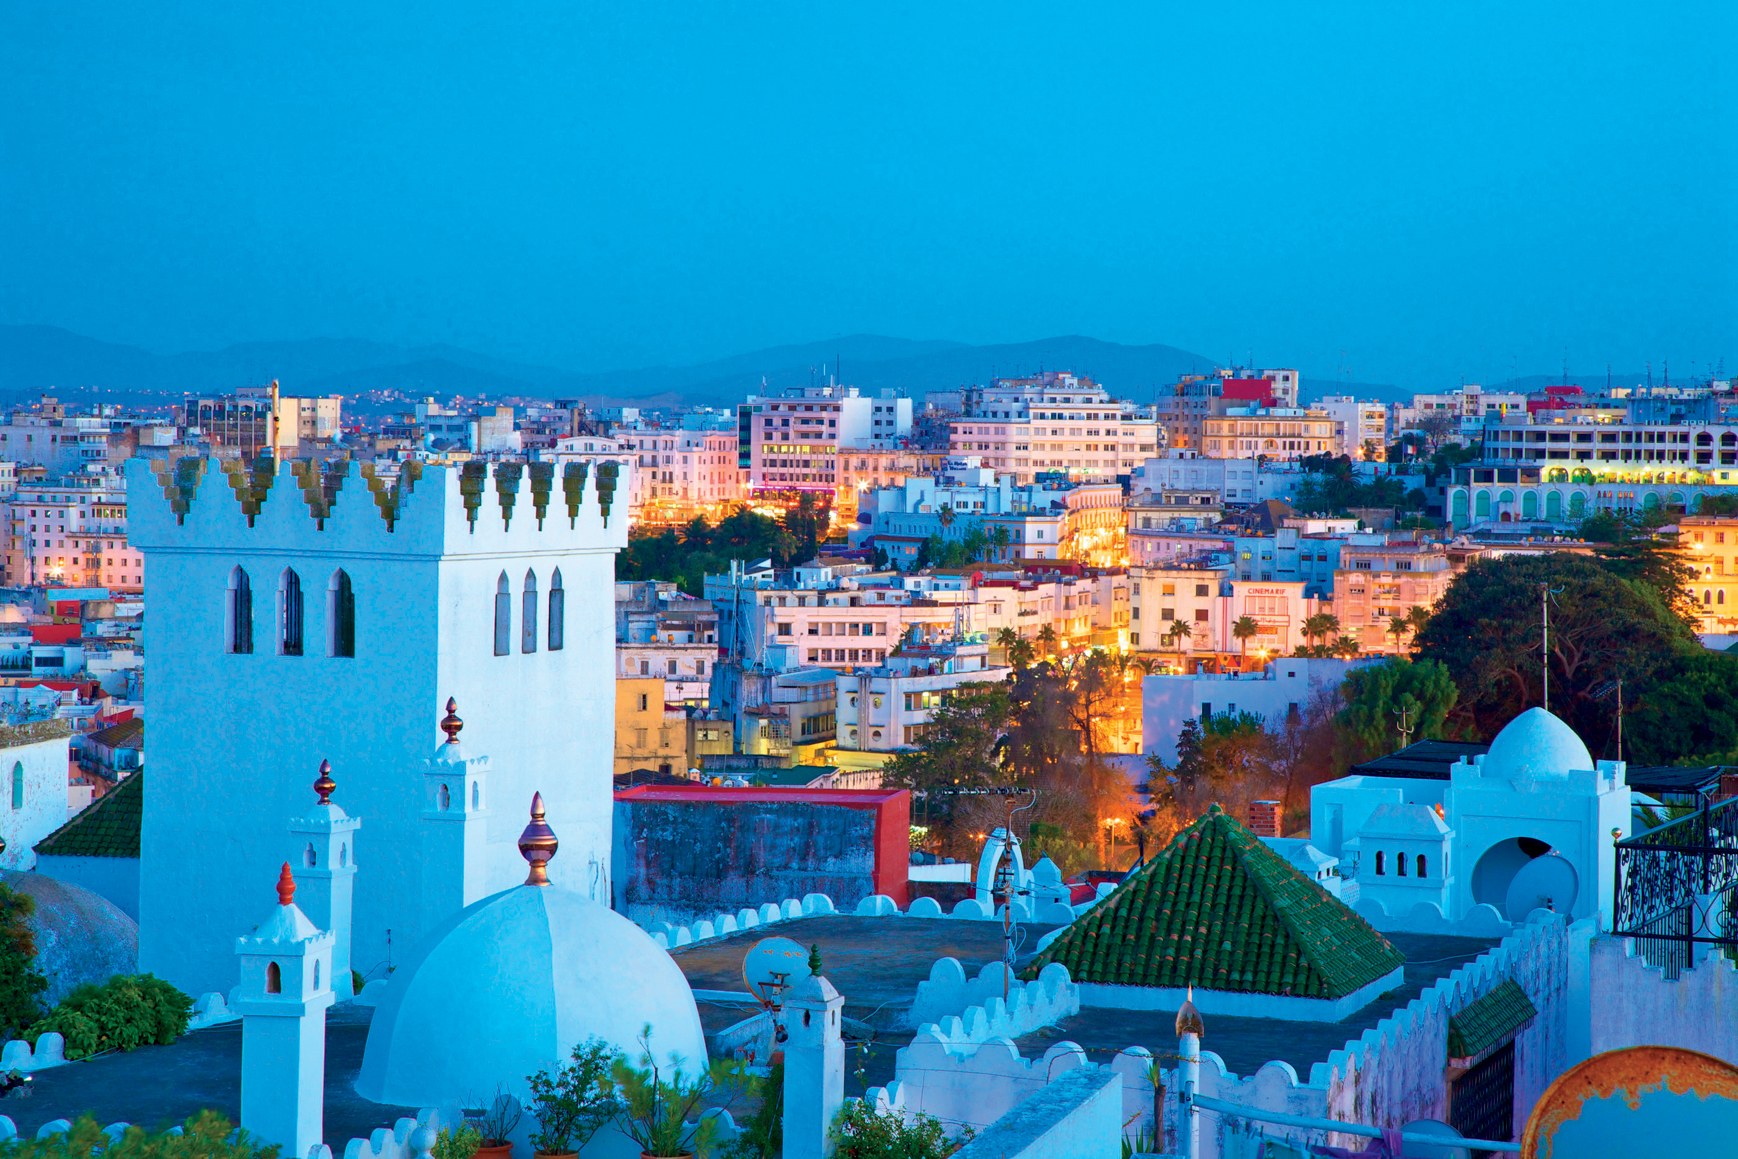 Explorez Tanger en Toute Liberté avec Notre Service de Location de Voiture